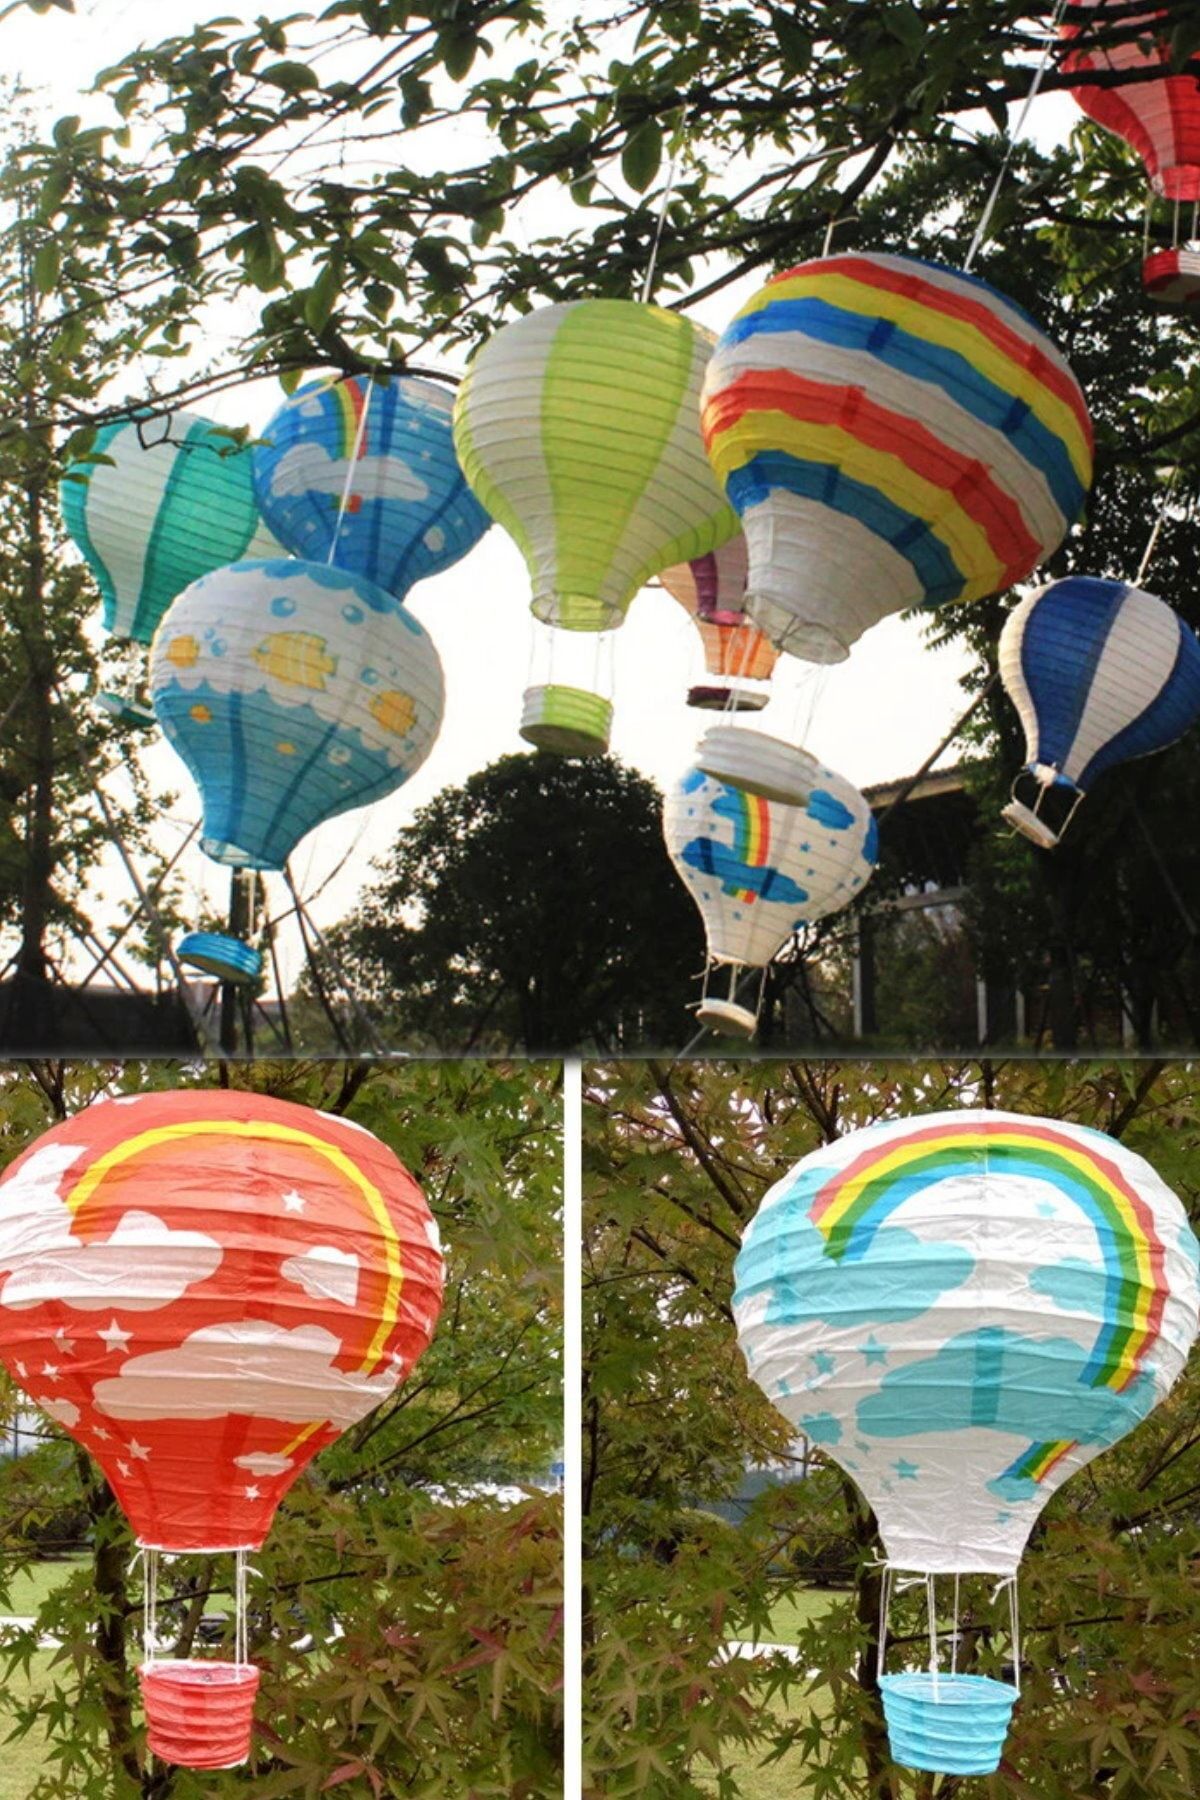 Utelips Gökkuşağı Rengarenk 1 Adet Dilek Feneri Kağıt Dekoratif Eğlenceli Uçan Balon Hediyelik Japon Feneri